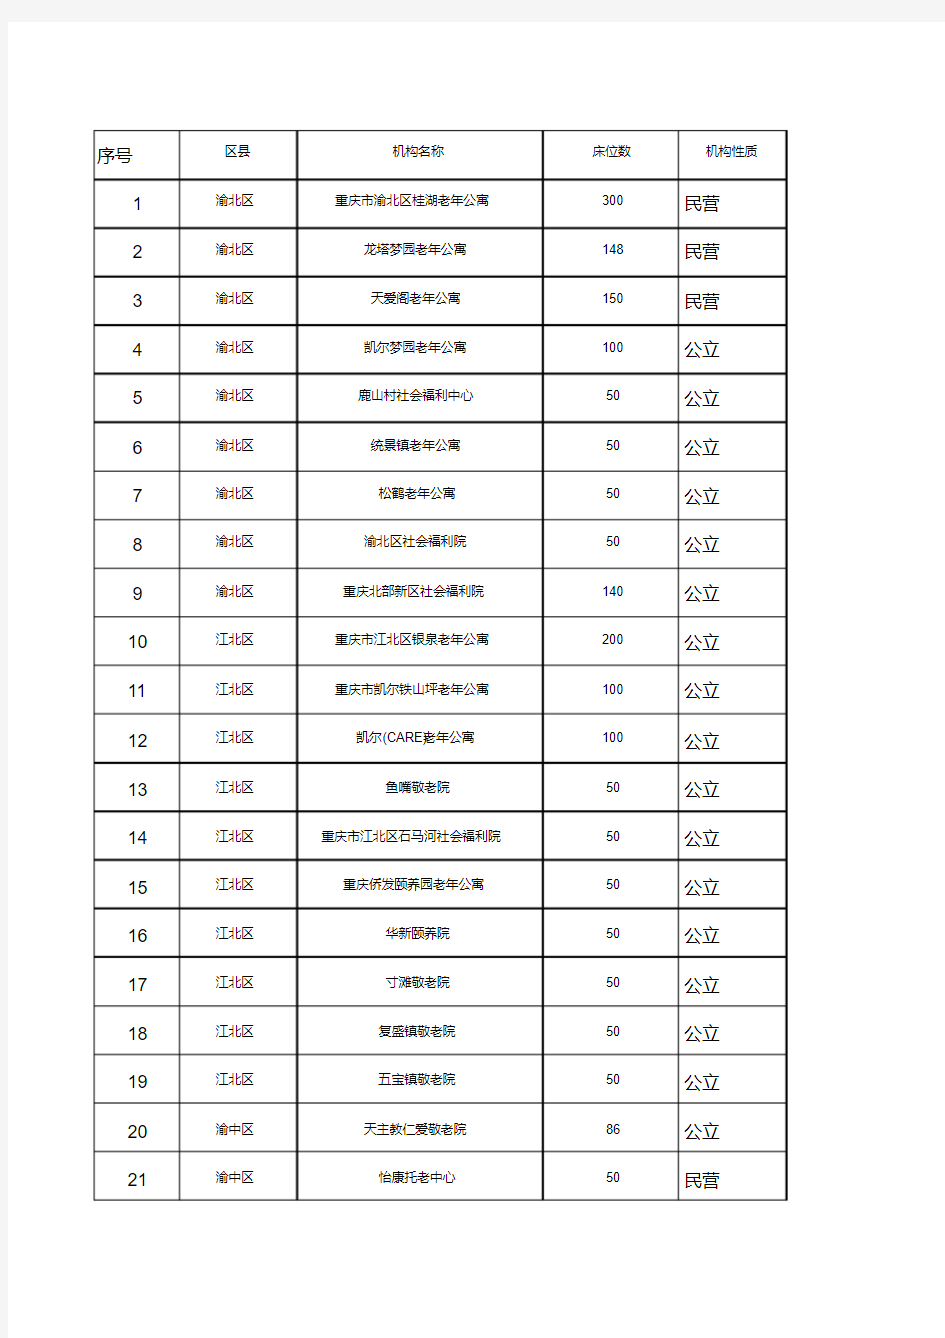 重庆市养老机构列表